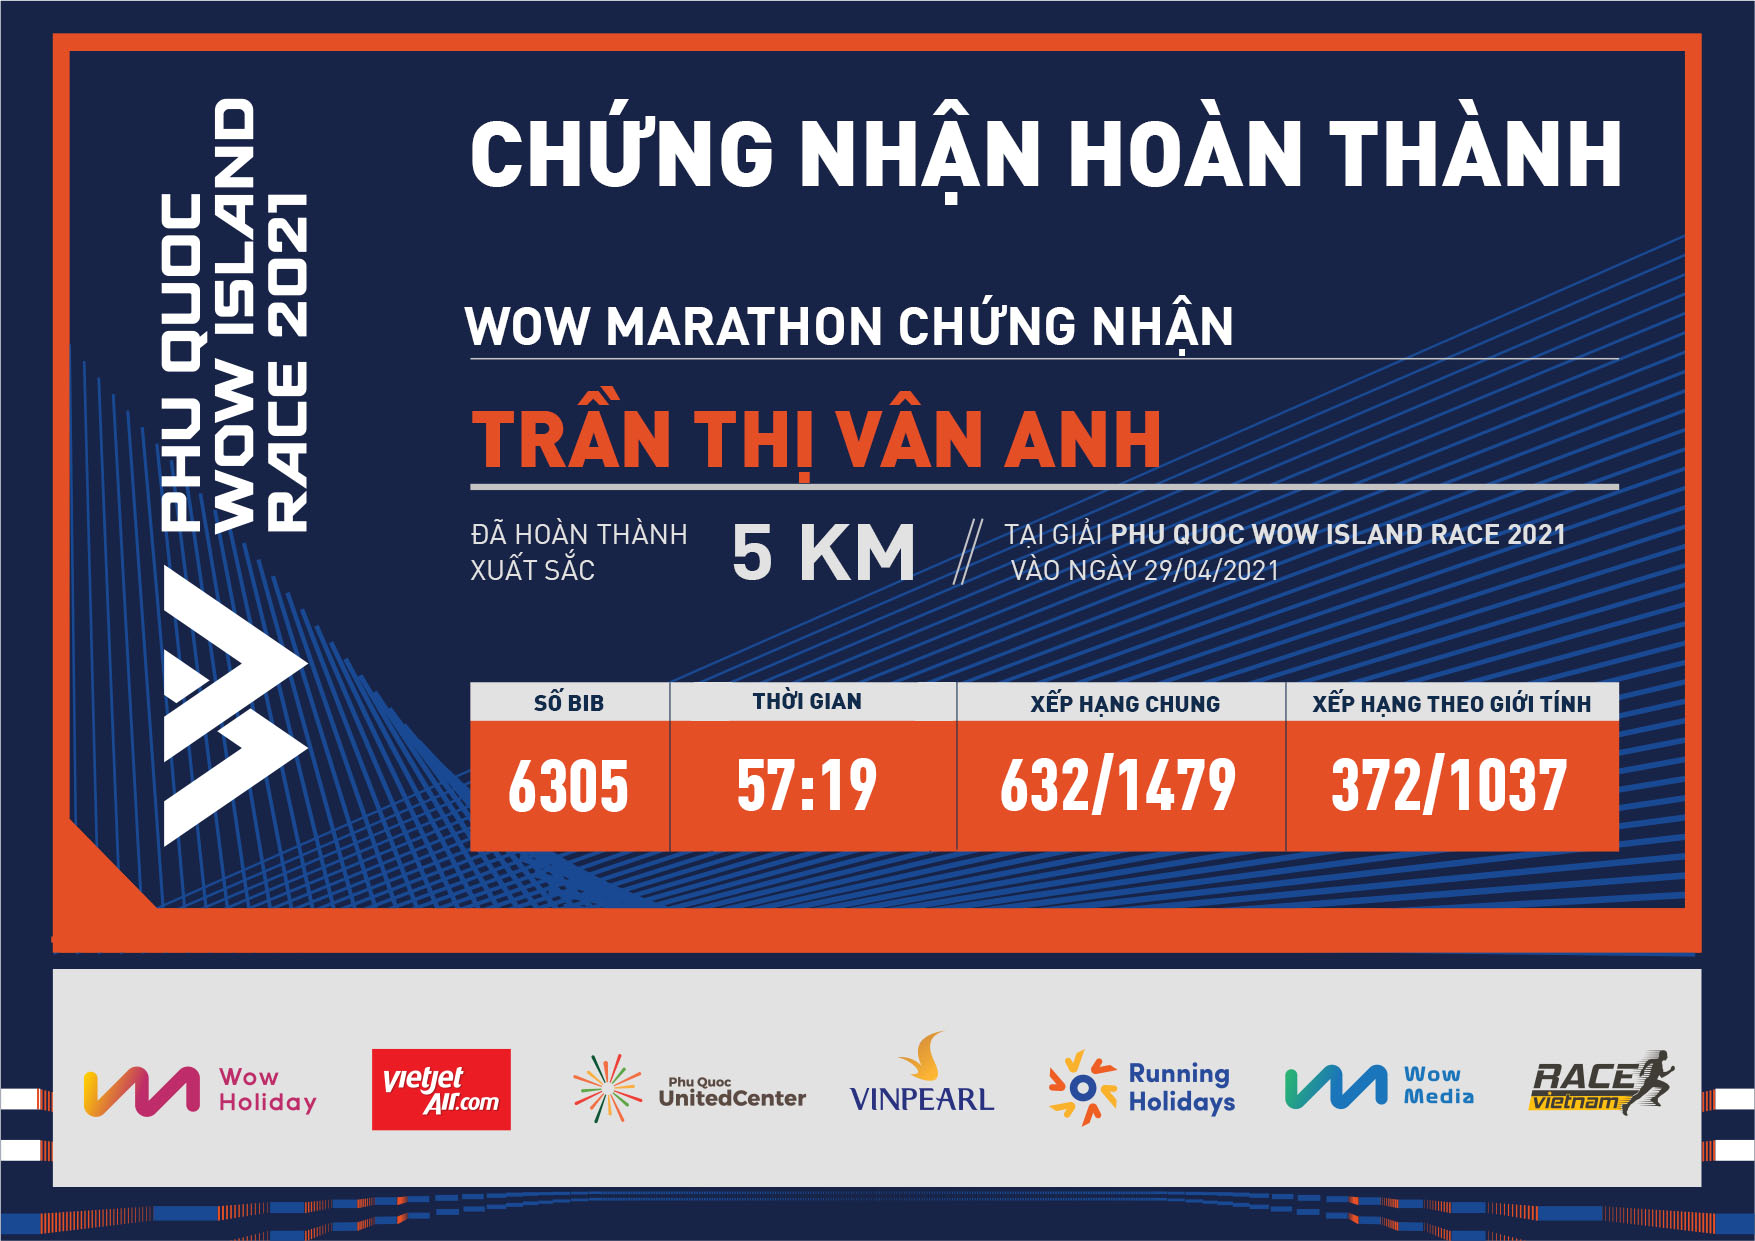 6305 - Trần Thị Vân Anh